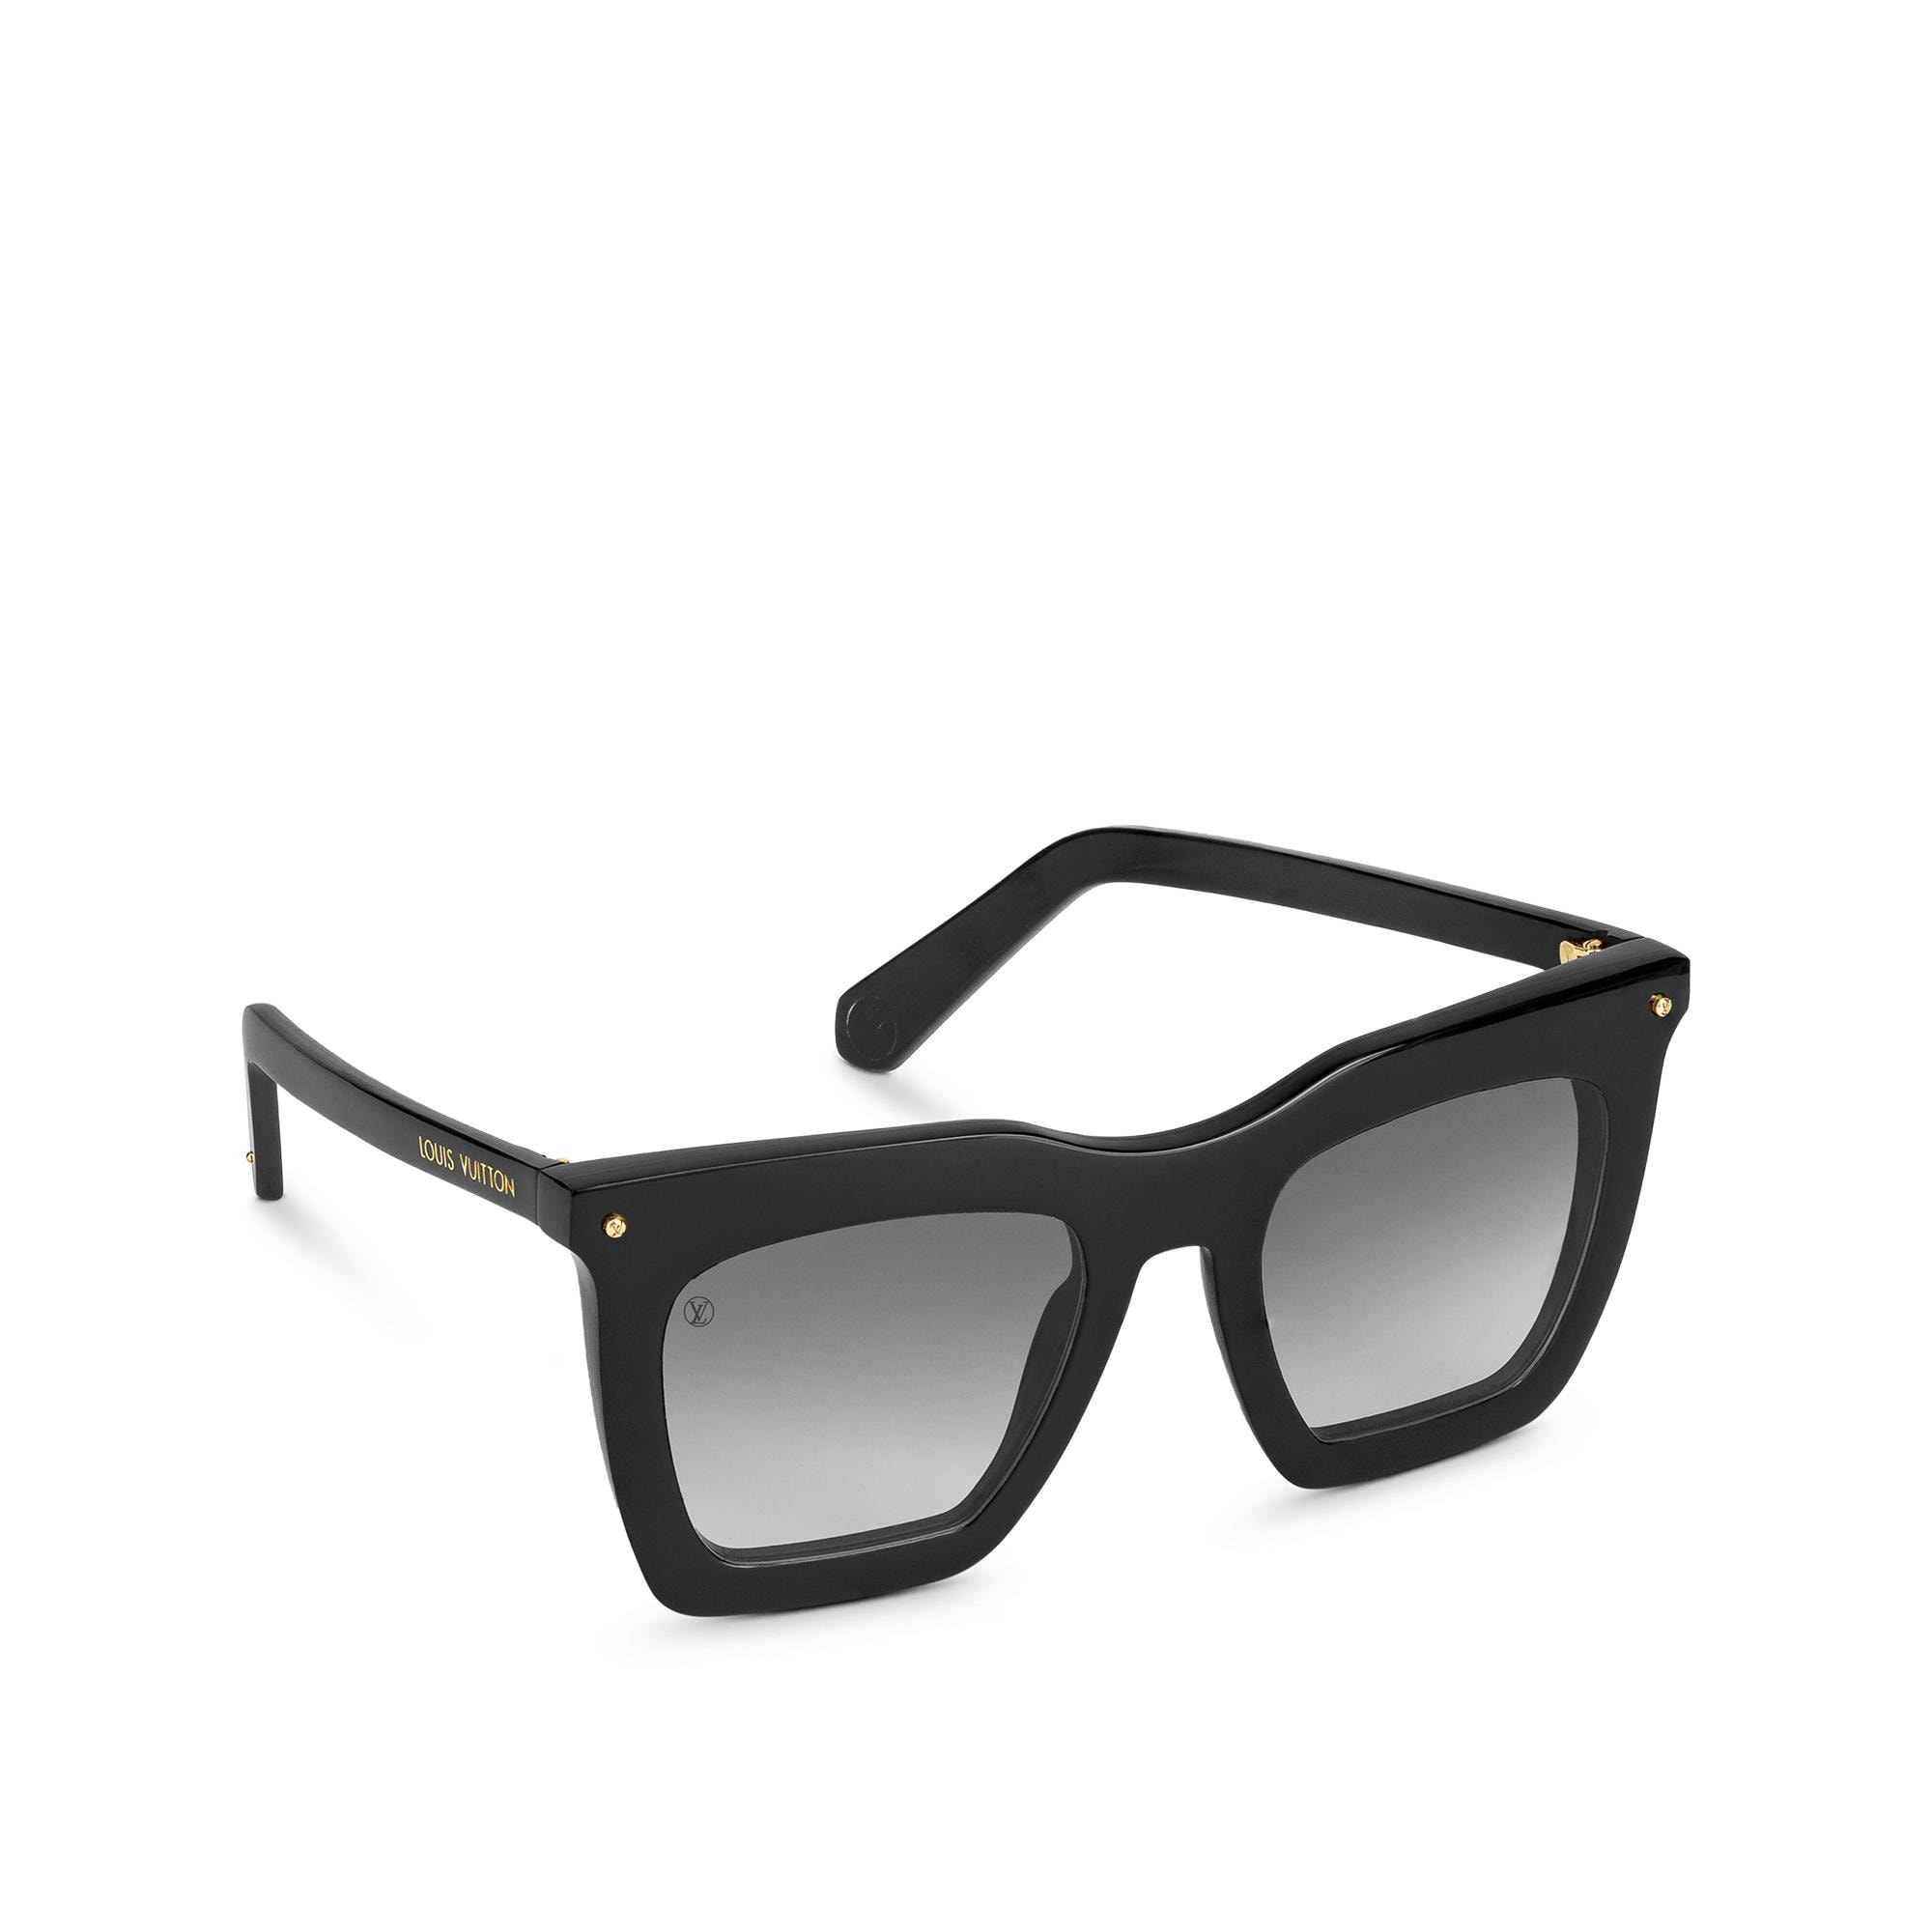 Louis Vuitton La Grande Bellezza Sunglasses in Black – WOMEN – Accessories Z1217W